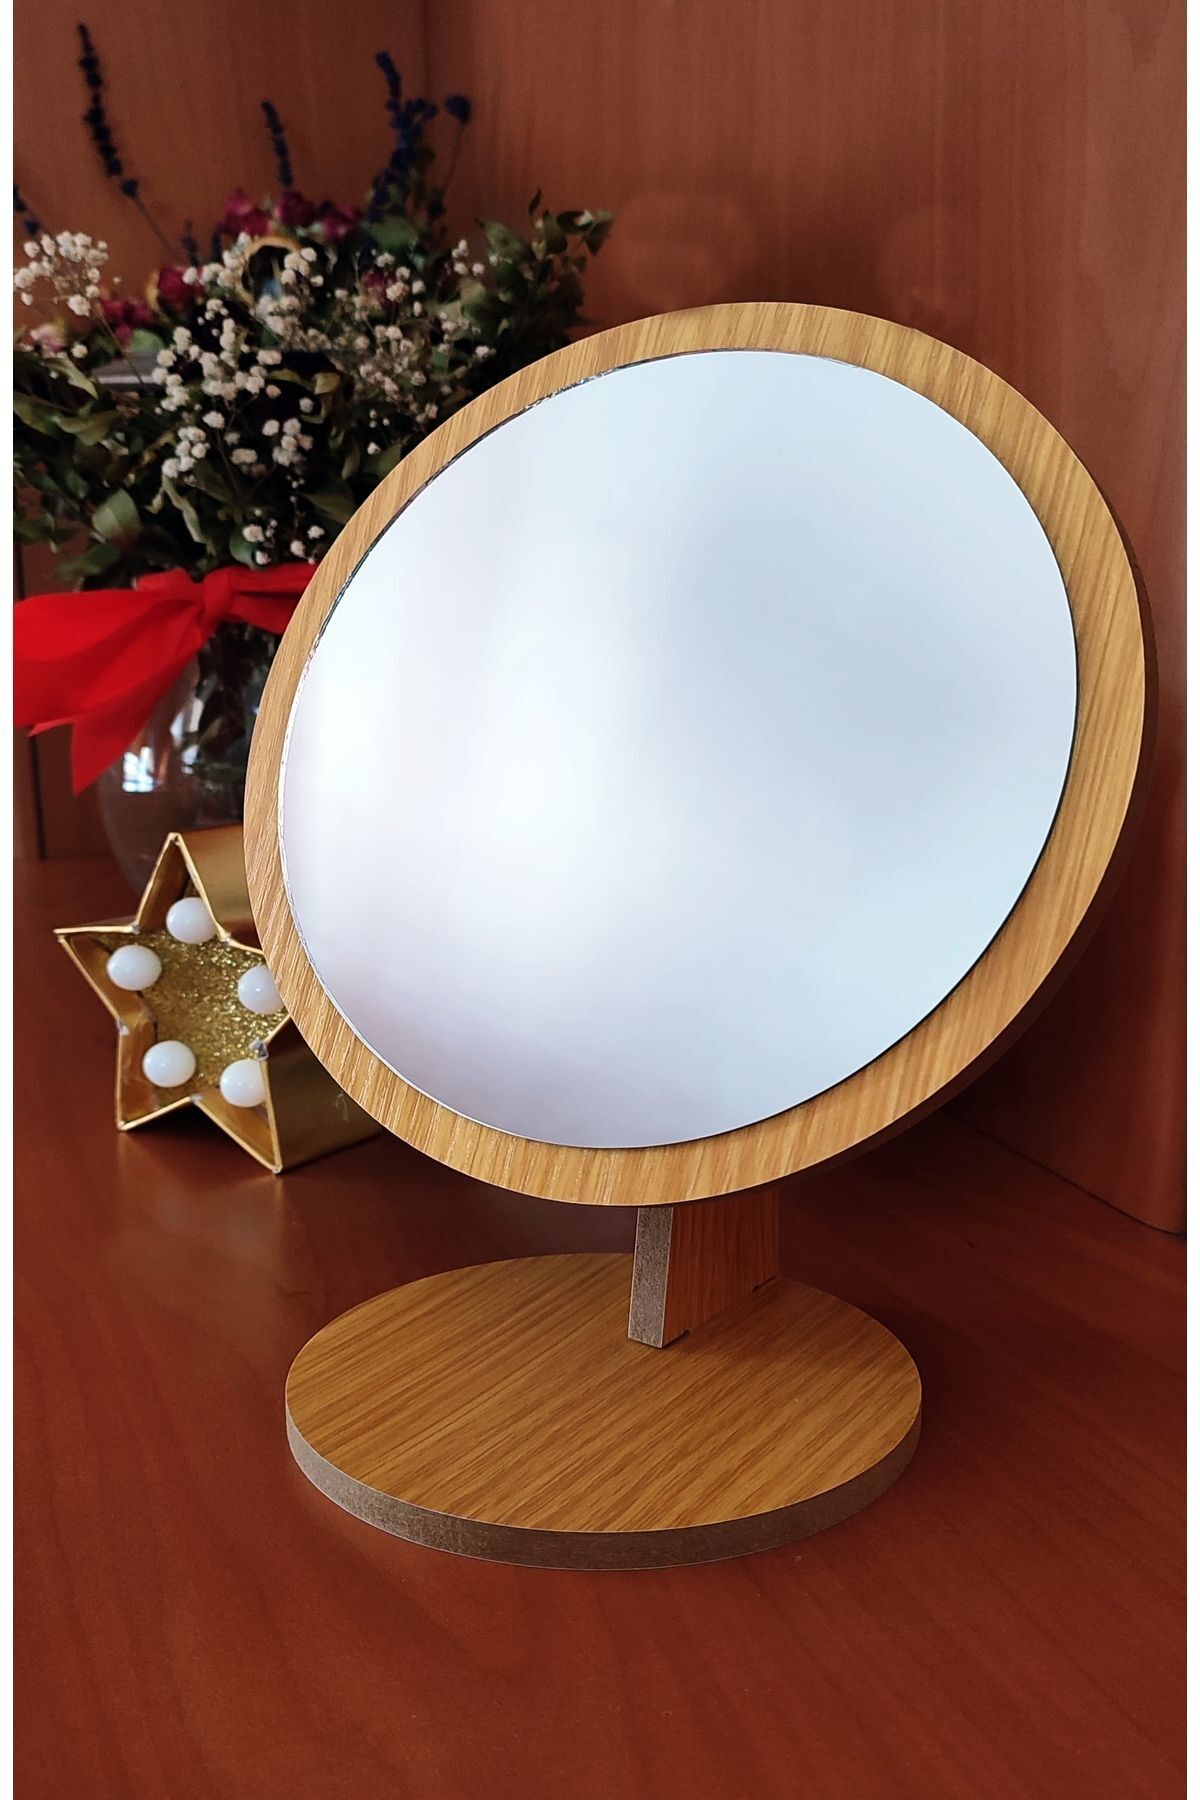 gaman Masaüstü Ayna Eğimi Ayarlanabilir Geçmeli 22 Cm Yuvarlak Görünümlü Ahşap Makyaj Cilt Bakımı Ayna